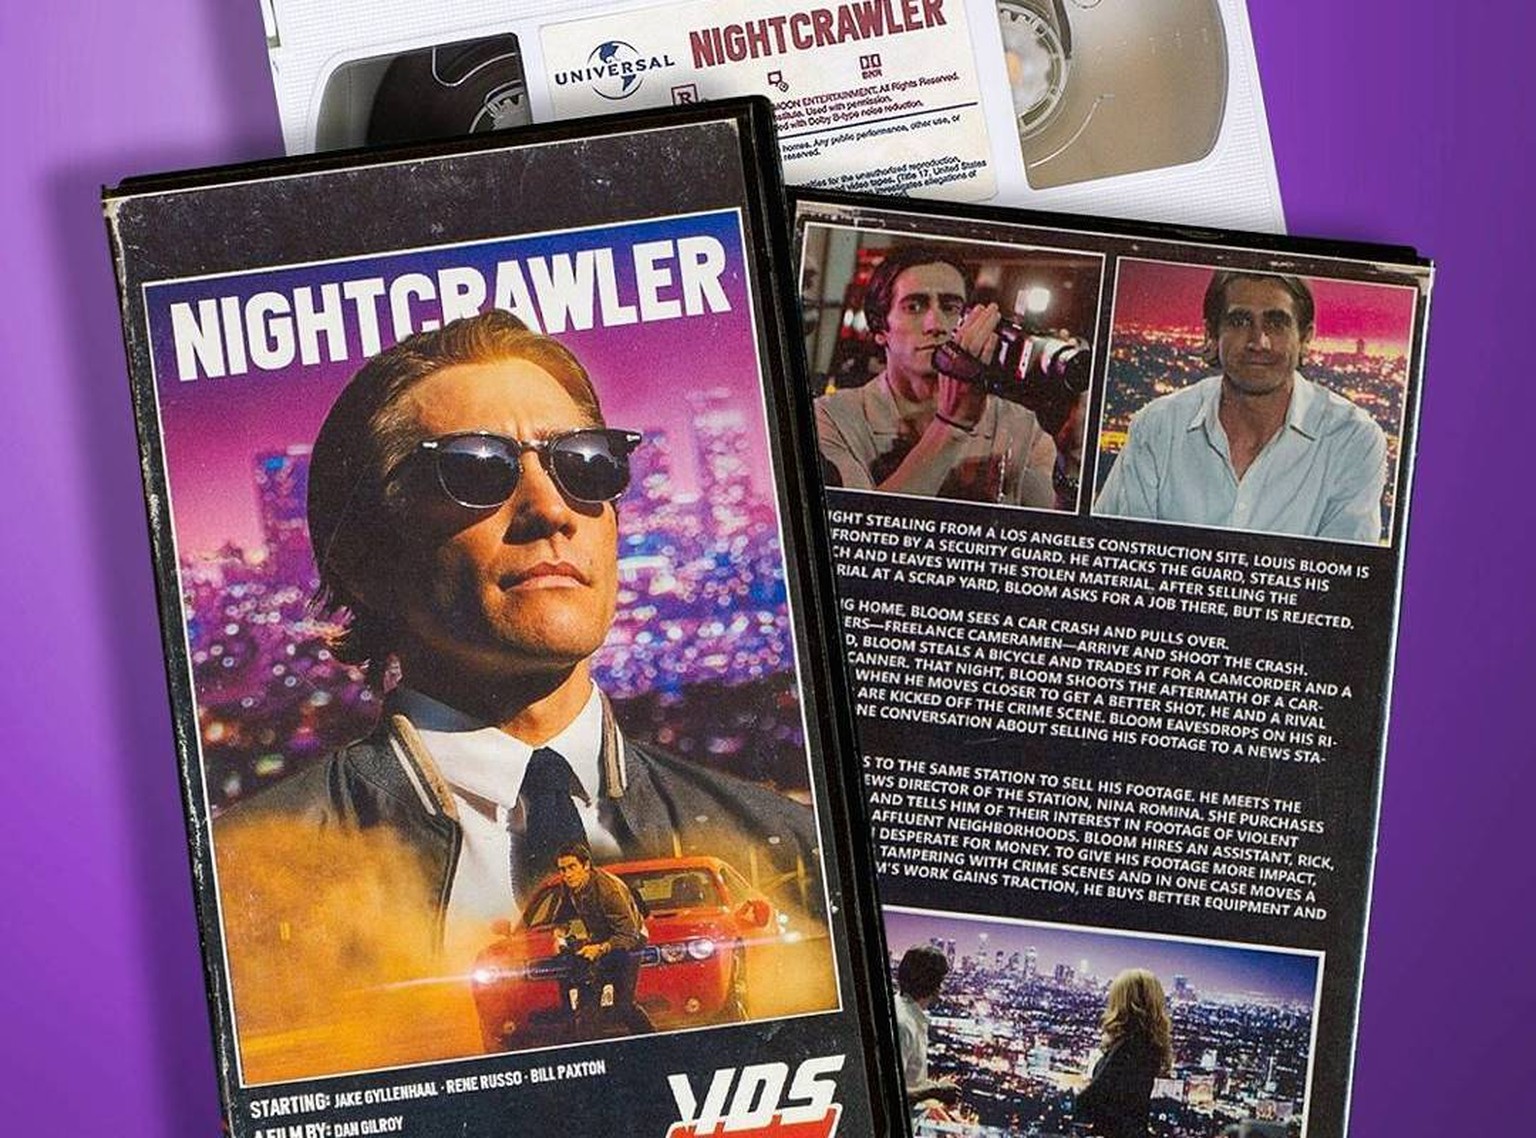 «Nightcrawler» im VHS-Style. Aber sowas von.